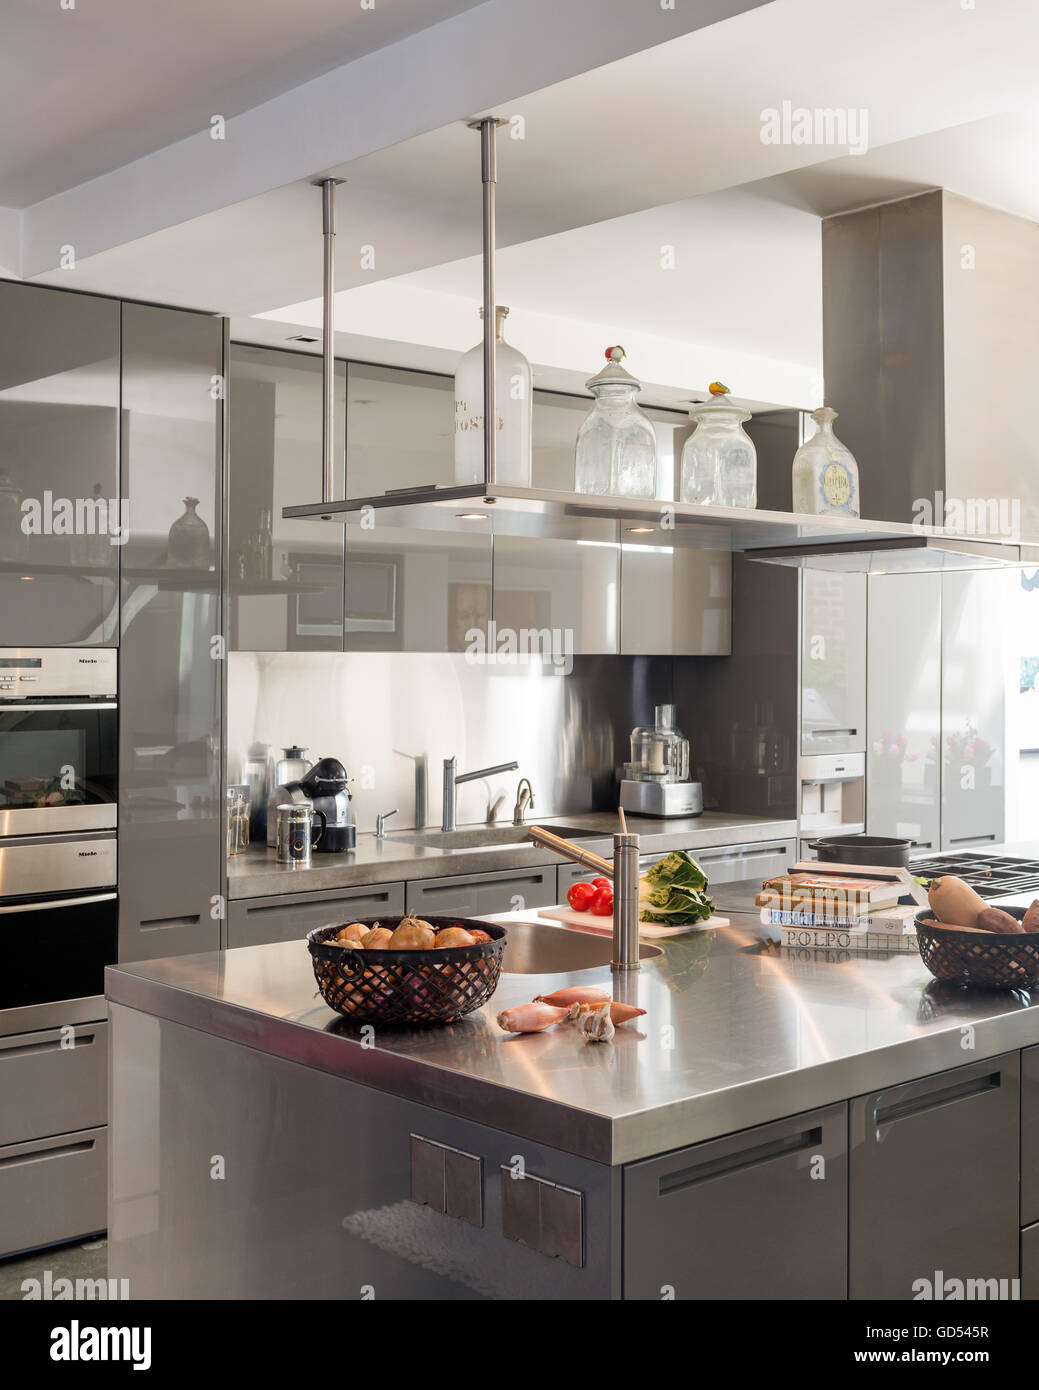 Industriellen Stil Küche mit Edelstahl-Oberflächen Stockfoto